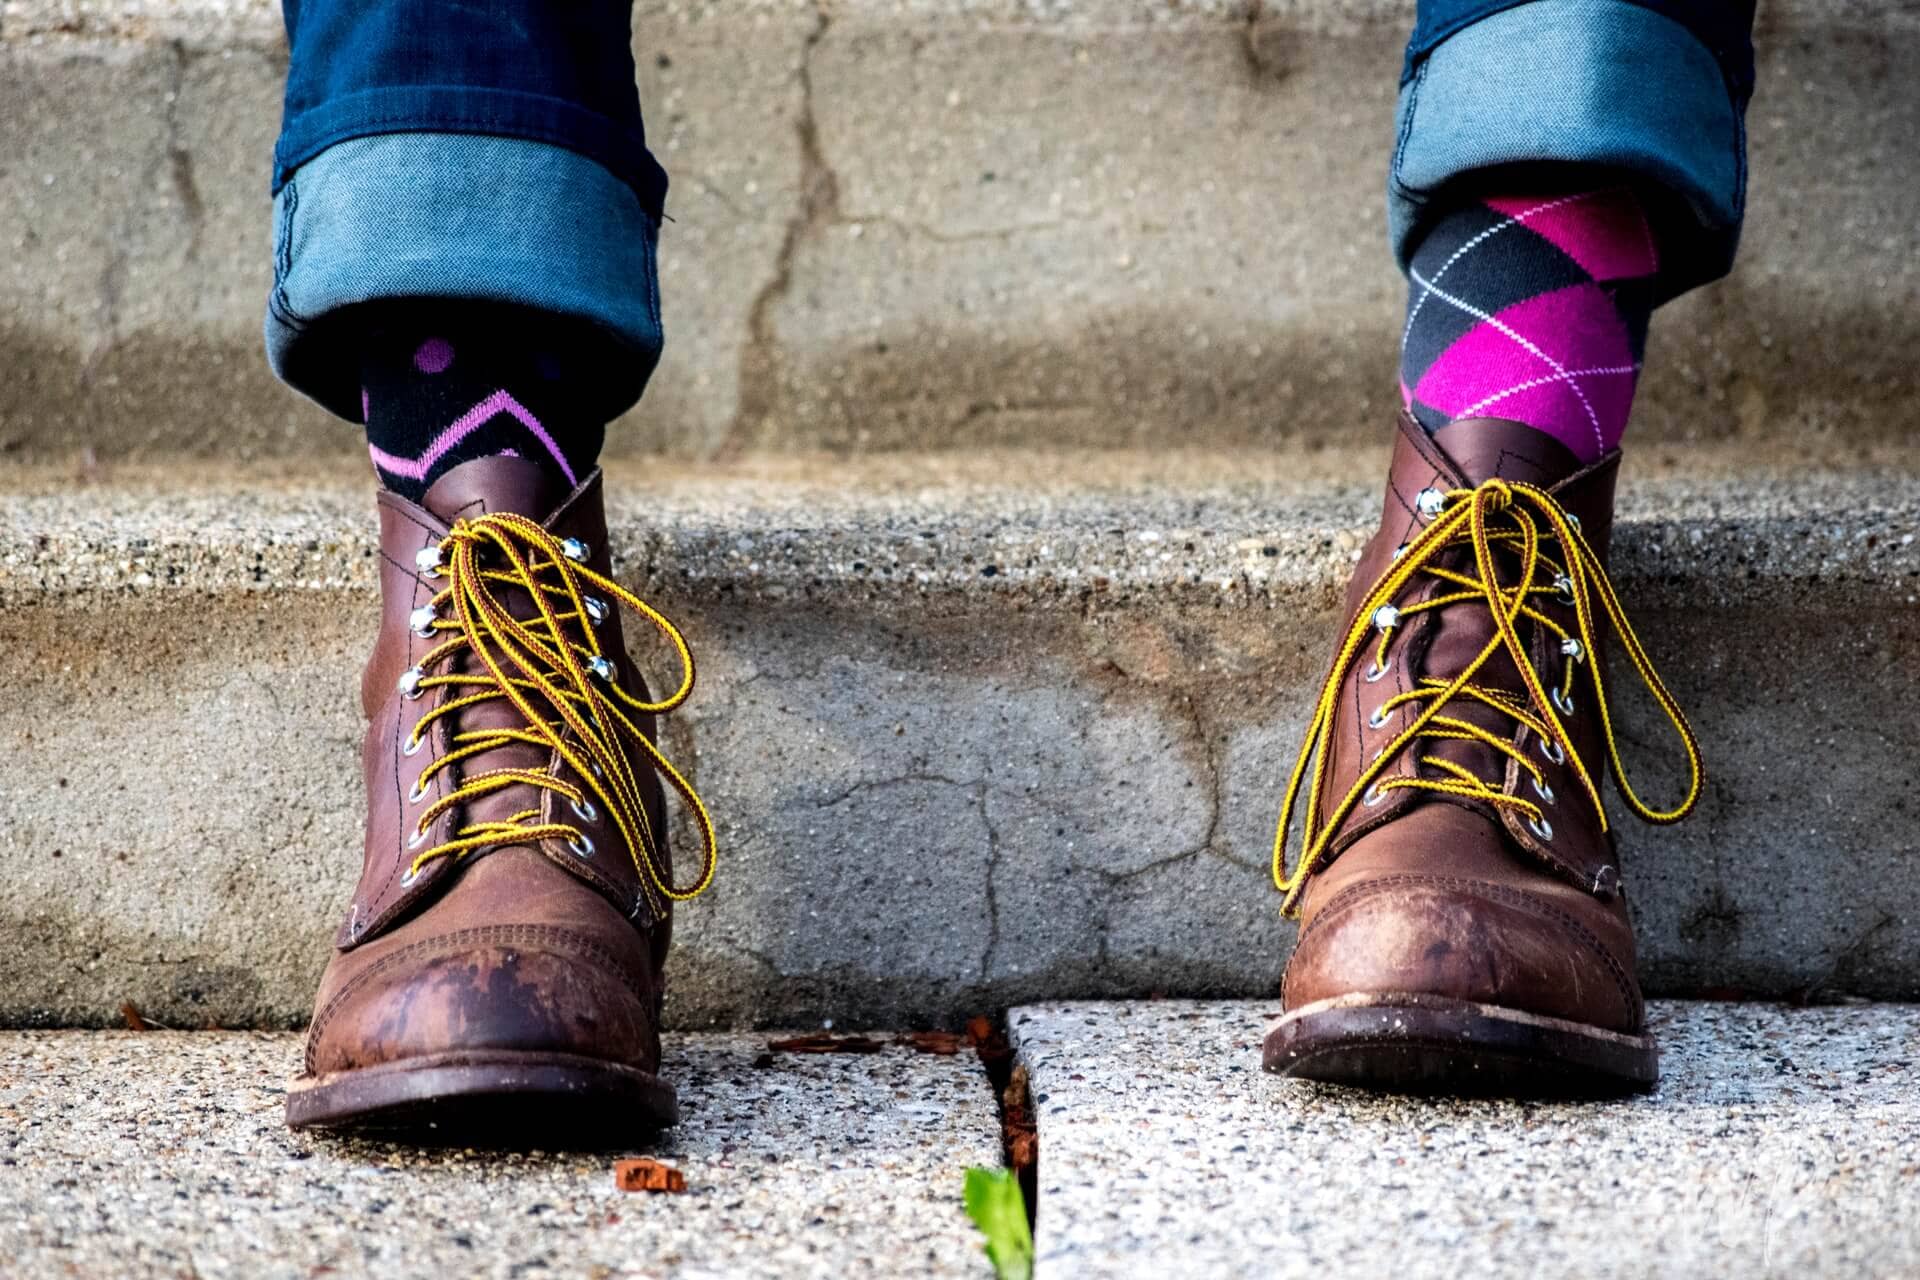 A man wearing purple argyle socks in boots